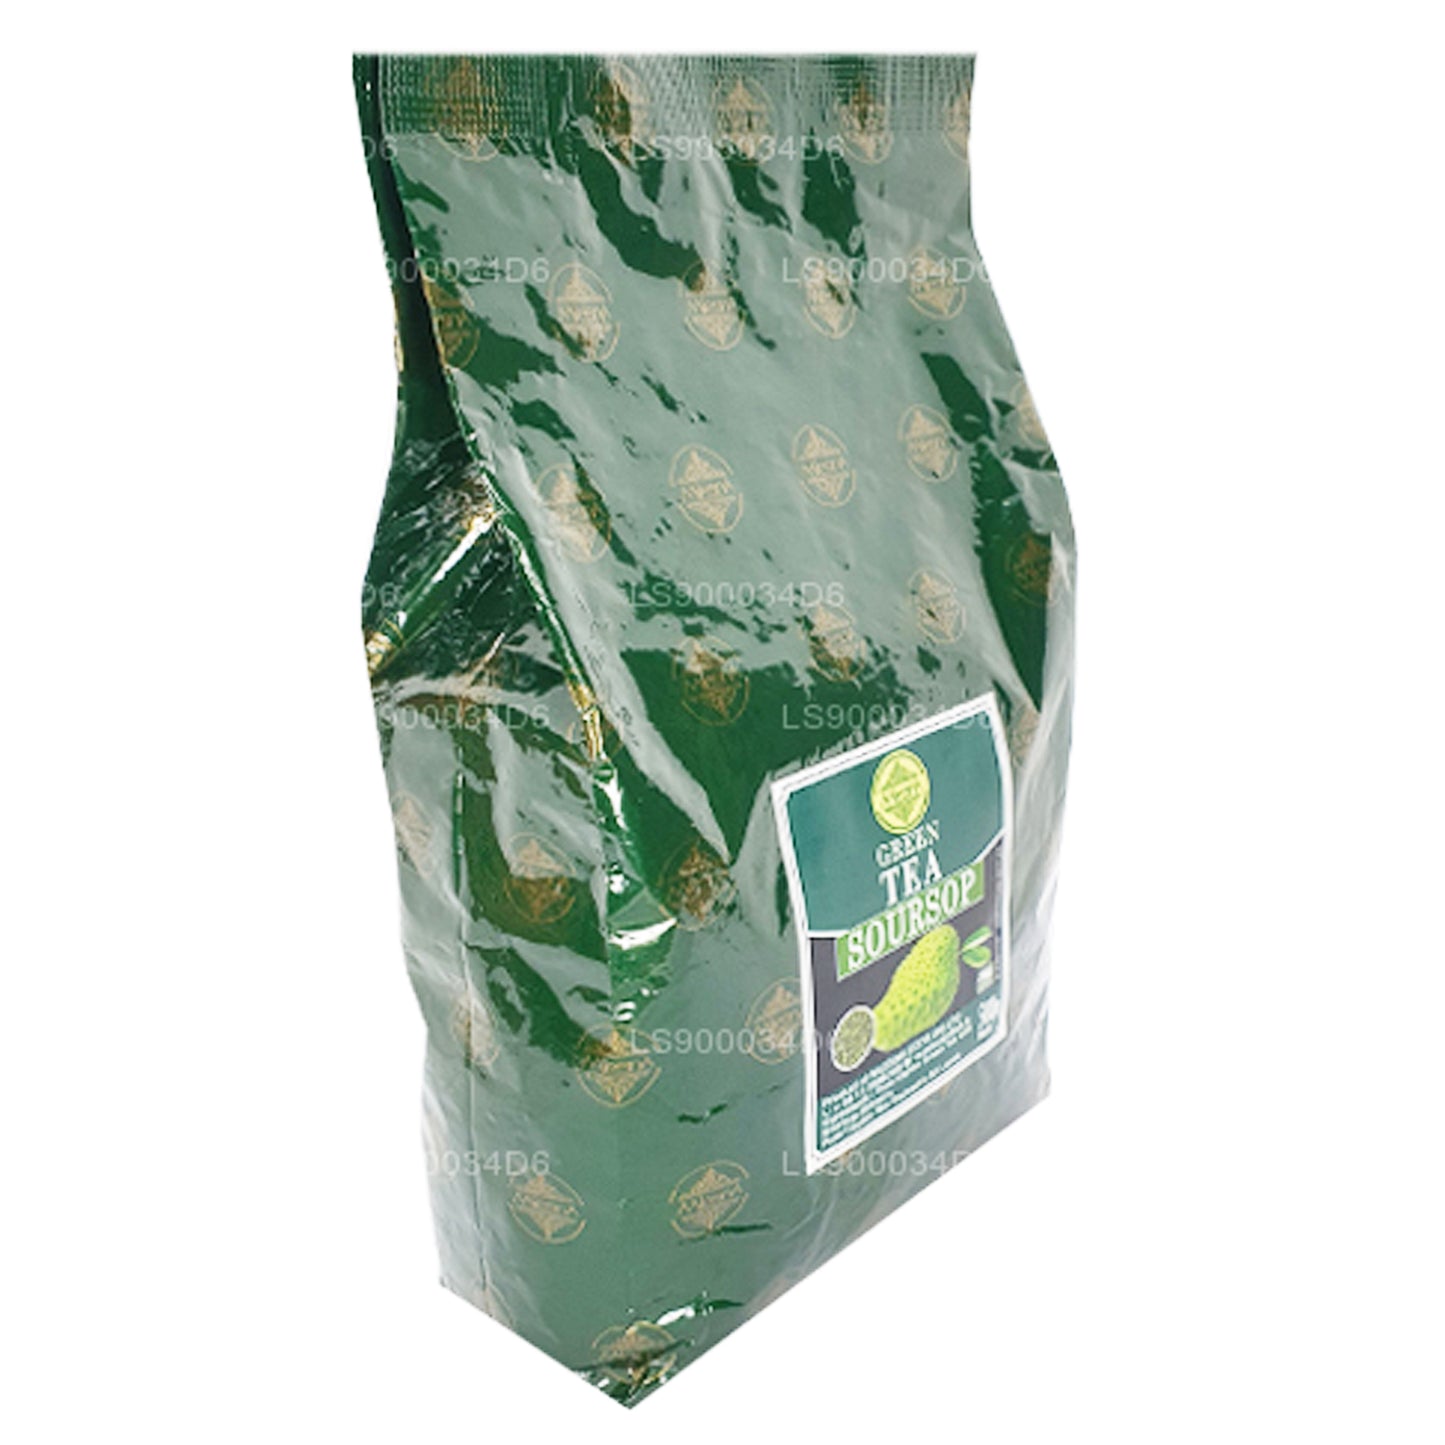 Mlesna Soursop Ceylon-Grüntee mit natürlichem Geschmack (500 g)